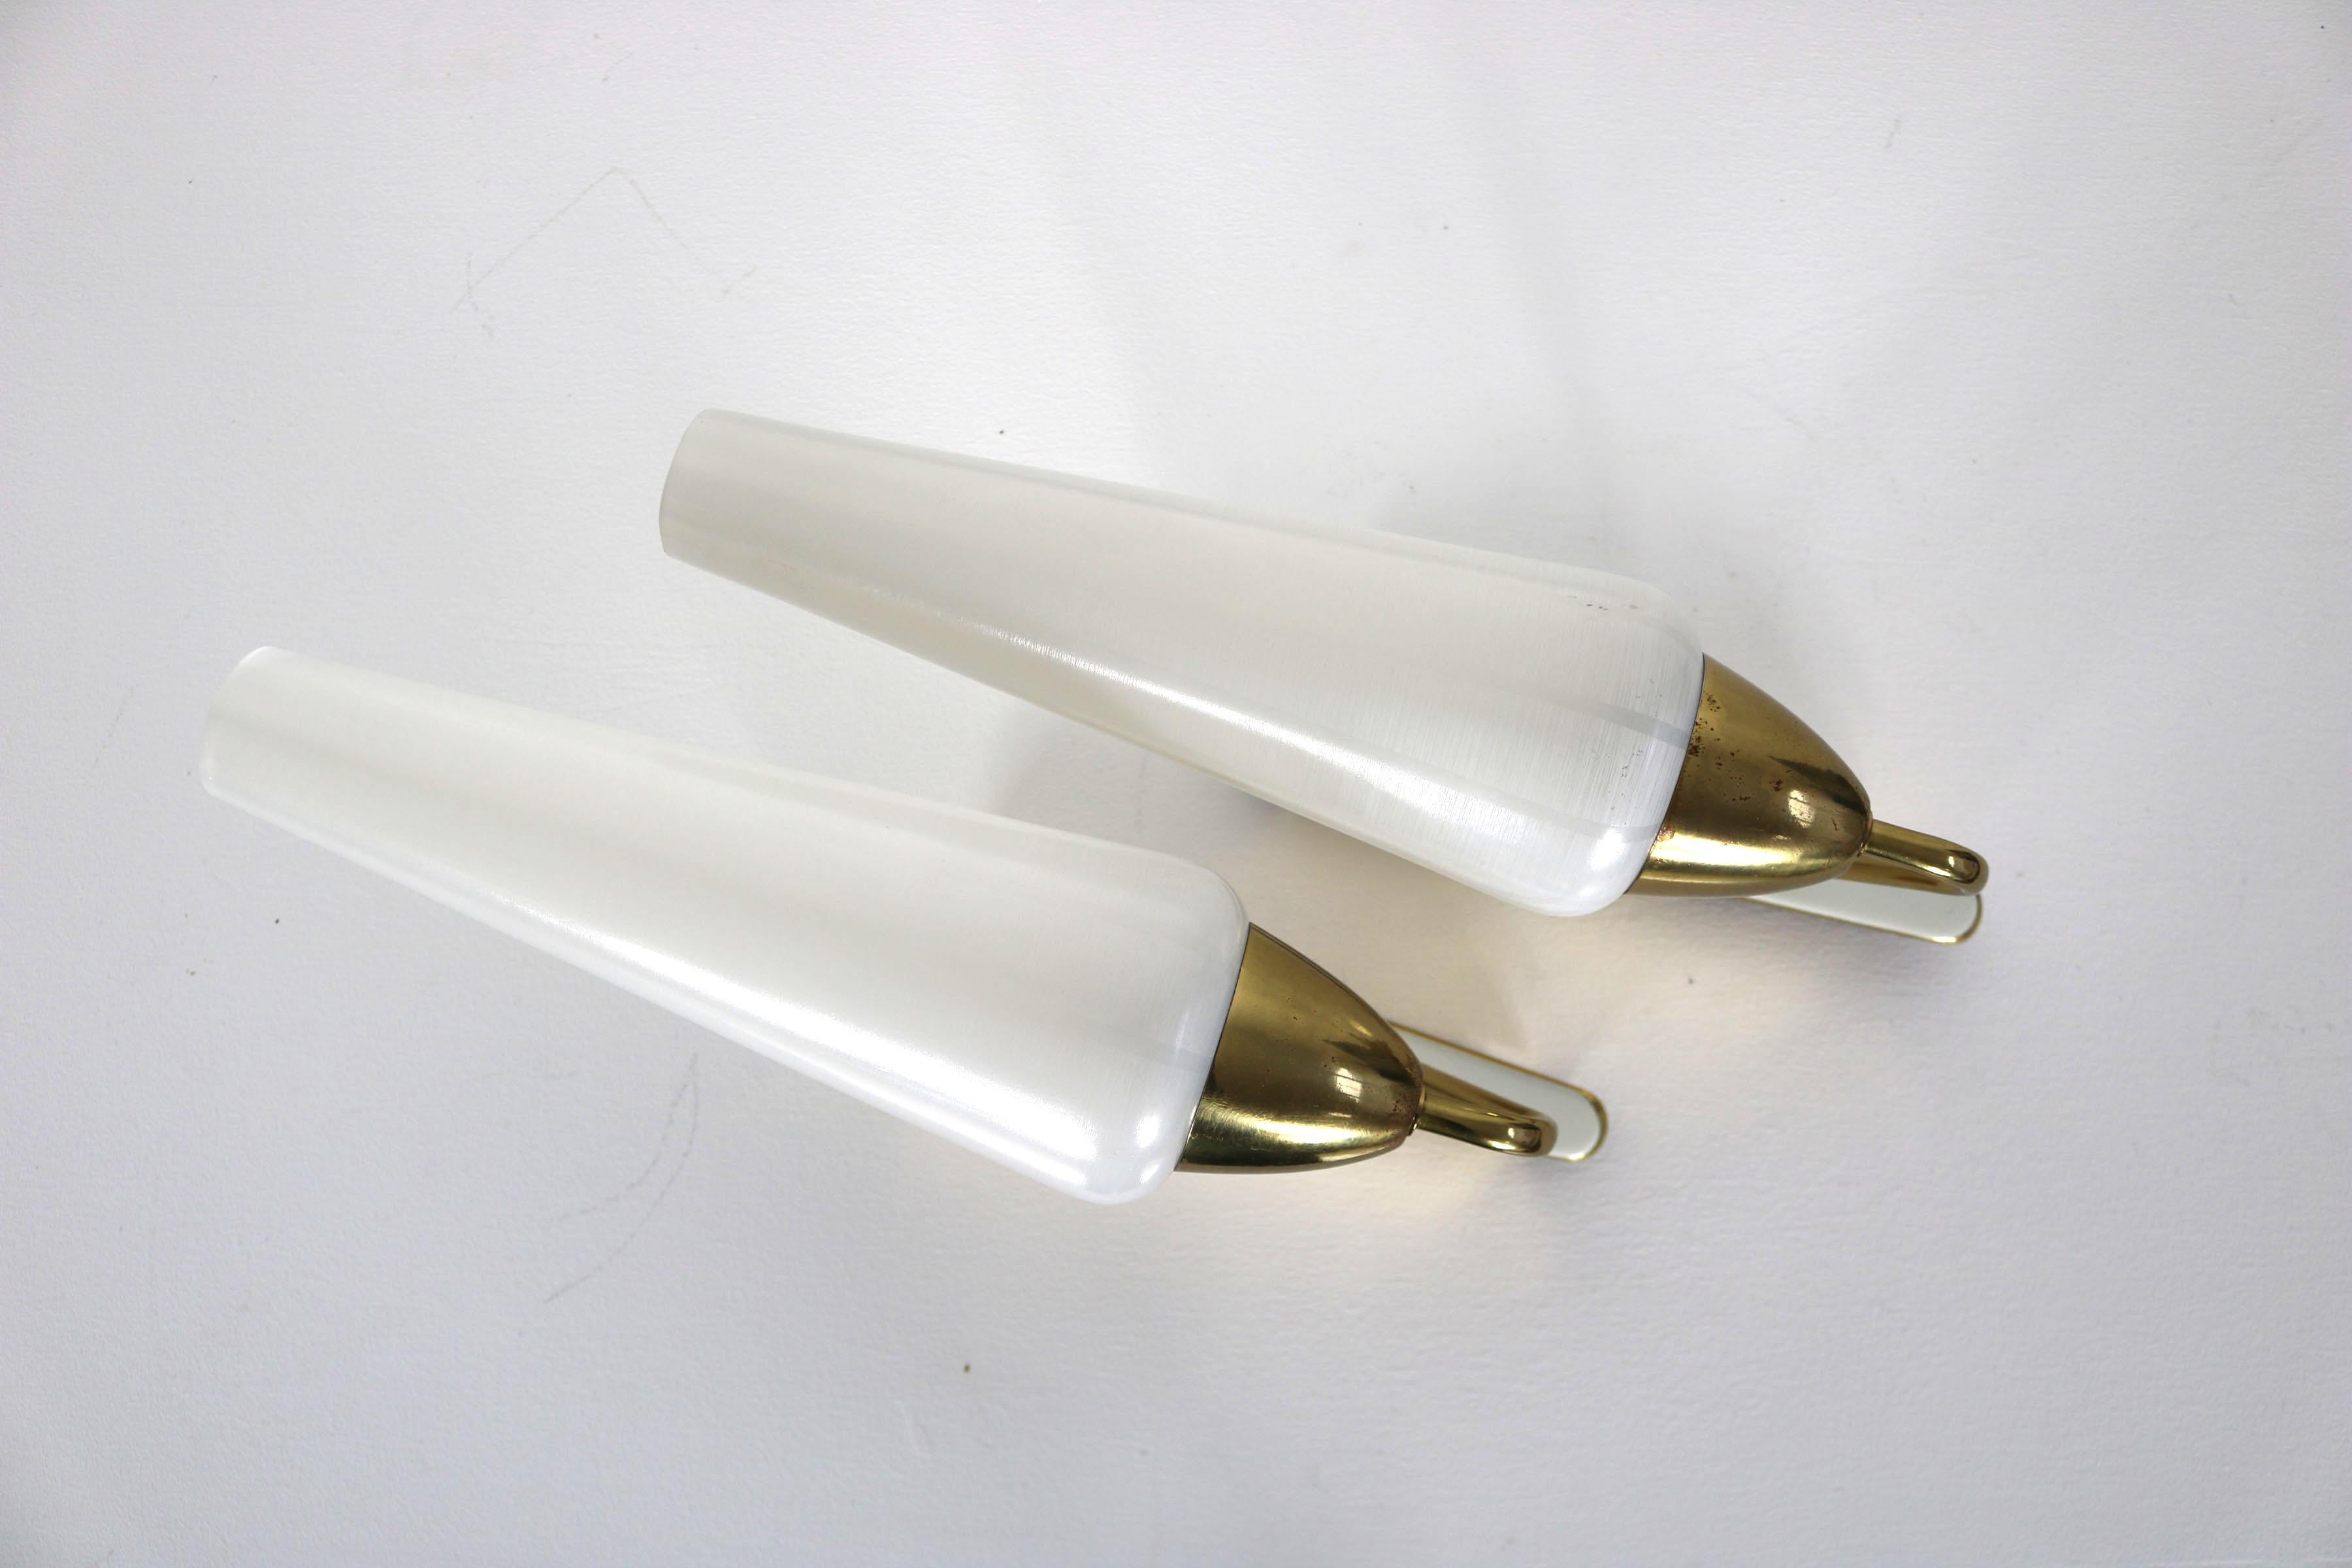 Paire de lampes italiennes de 1950. Les deux lampes ont une base en laiton partiellement émaillée. Les abat-jour sont en verre teinté. L'ensemble présente des signes épars d'utilisation, mais est généralement en bon état vintage.

N'hésitez pas à